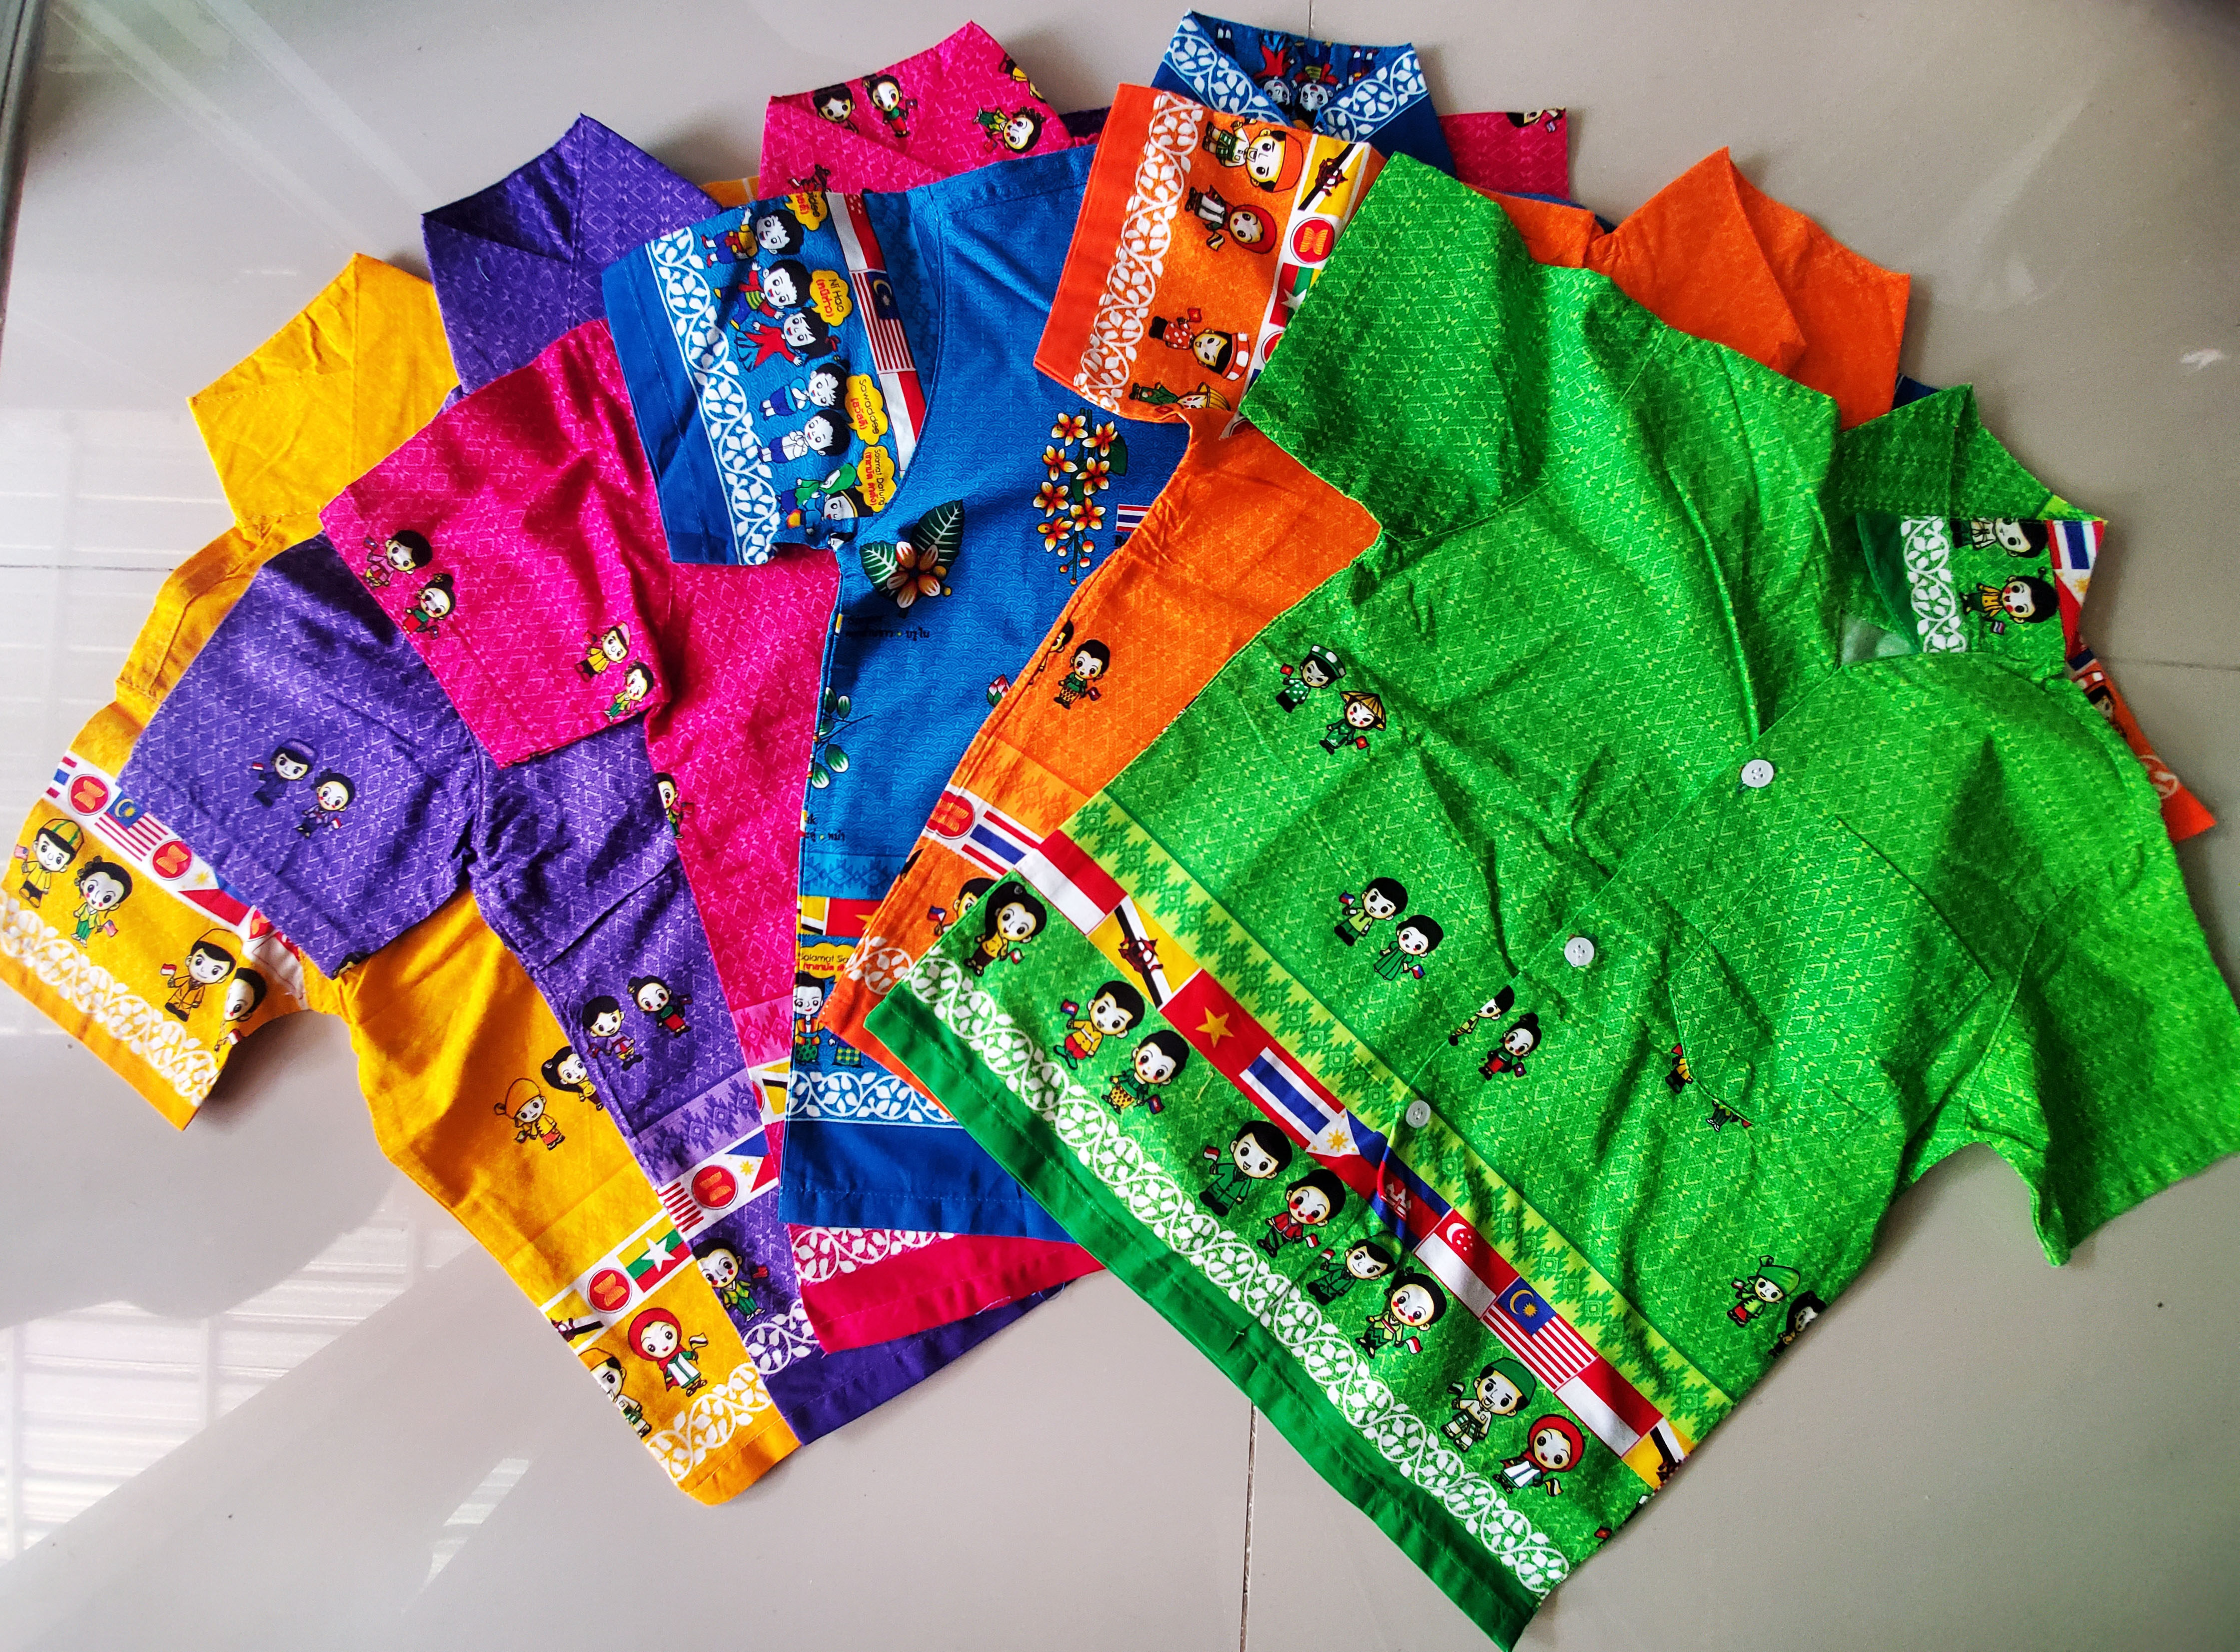 เสื้ออาเซียน(เด็ก) เสื้ออาเซียนเด็กคอปก เสื้อลายไทย เสื้อผ้าไทย เสื้อไทยใส่ไปโรงเรียน เสื้อลายอาเซียน เสื้อลายป